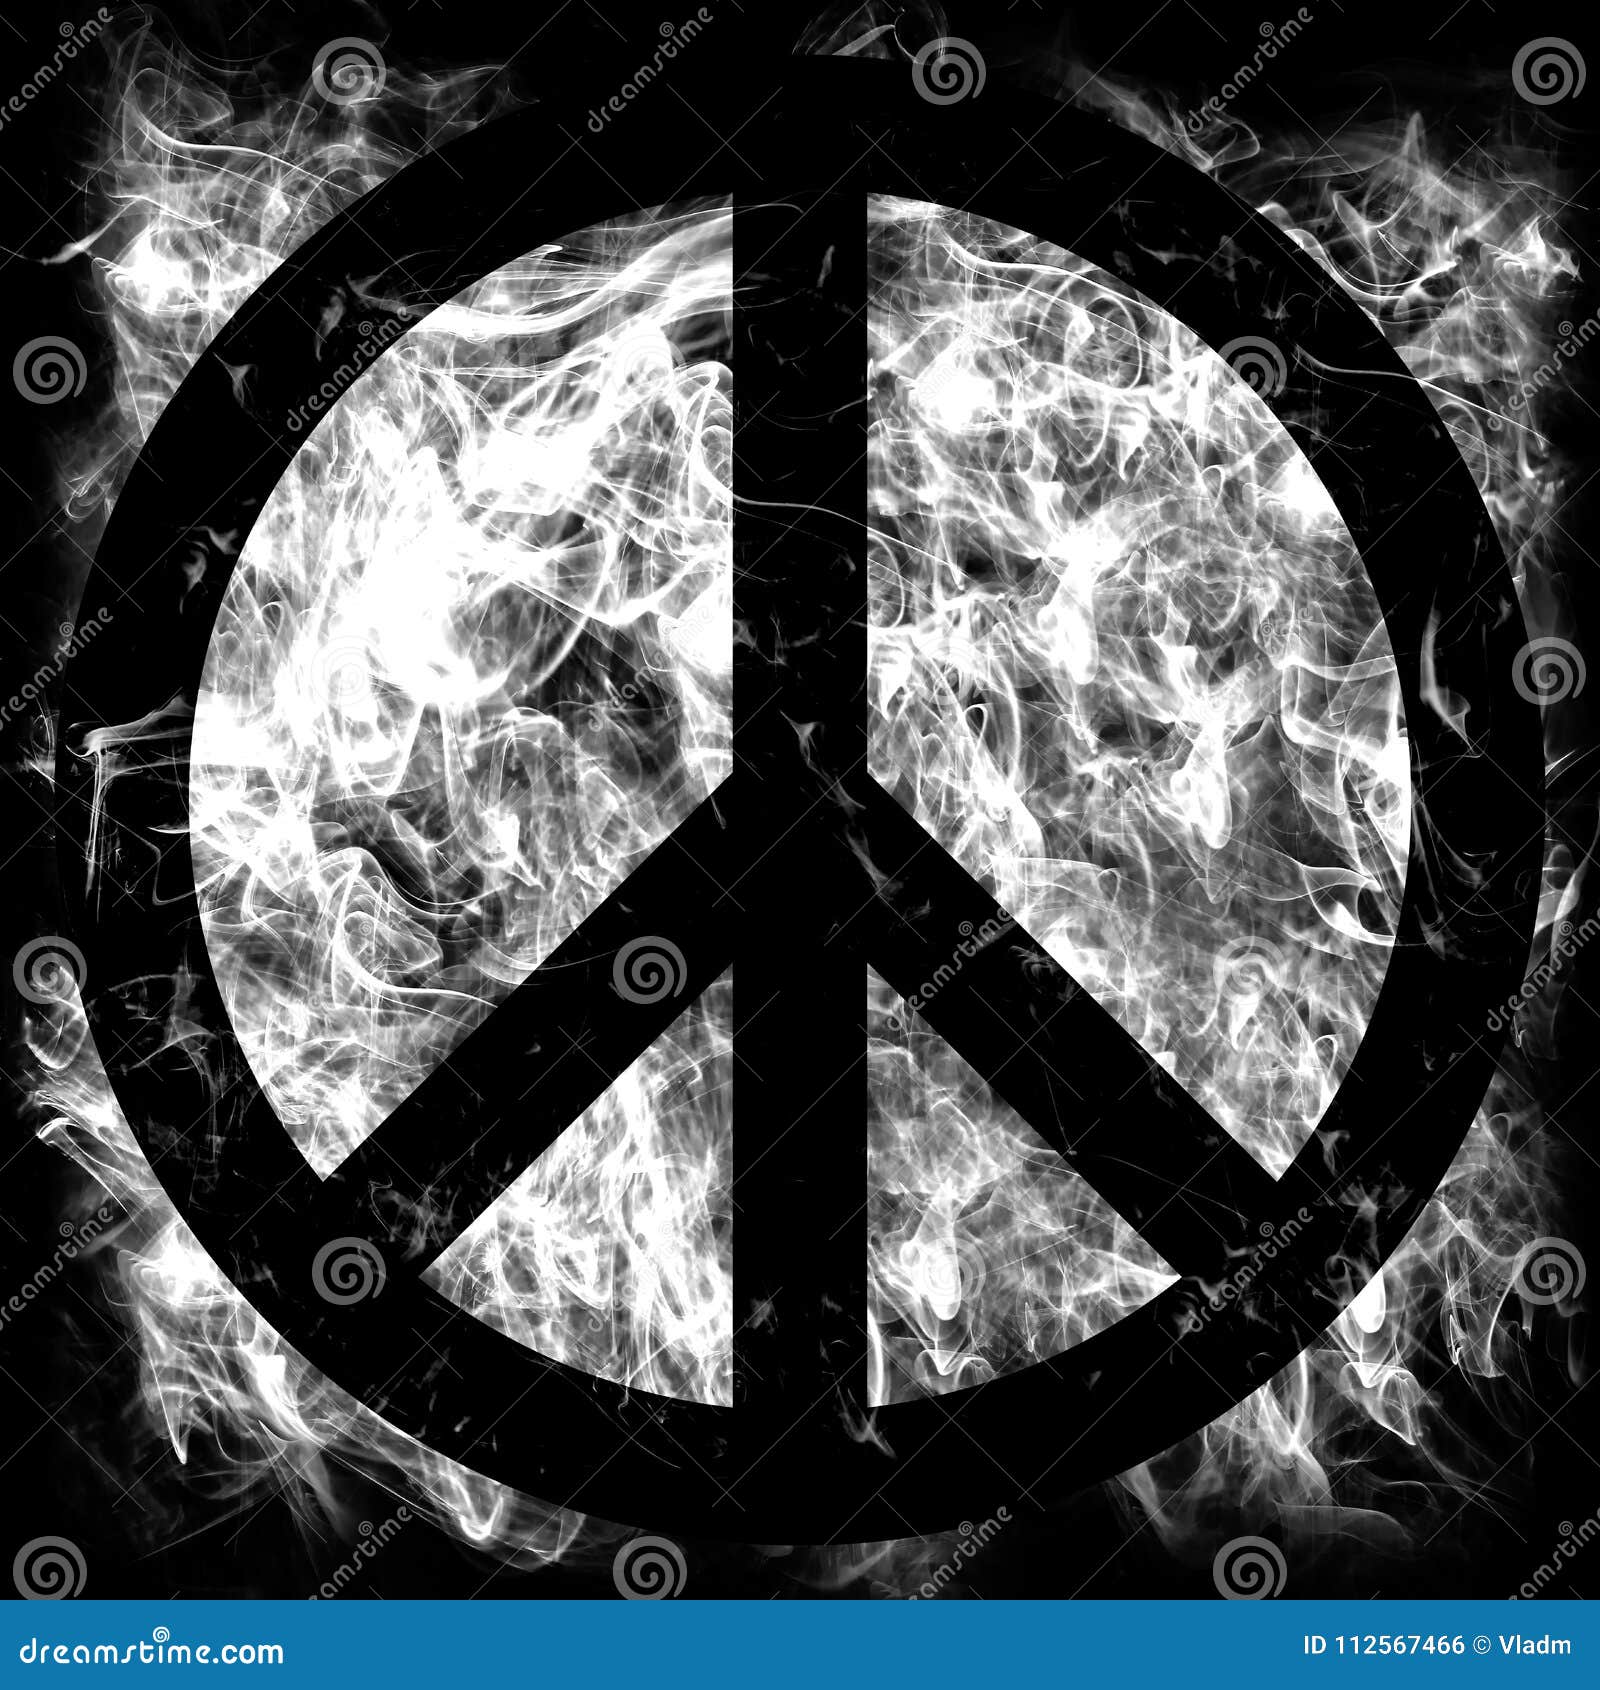 Peace Sign Smoke Flag on a Black Background Stock Illustration -  Illustration of flag, emblem: 112567466